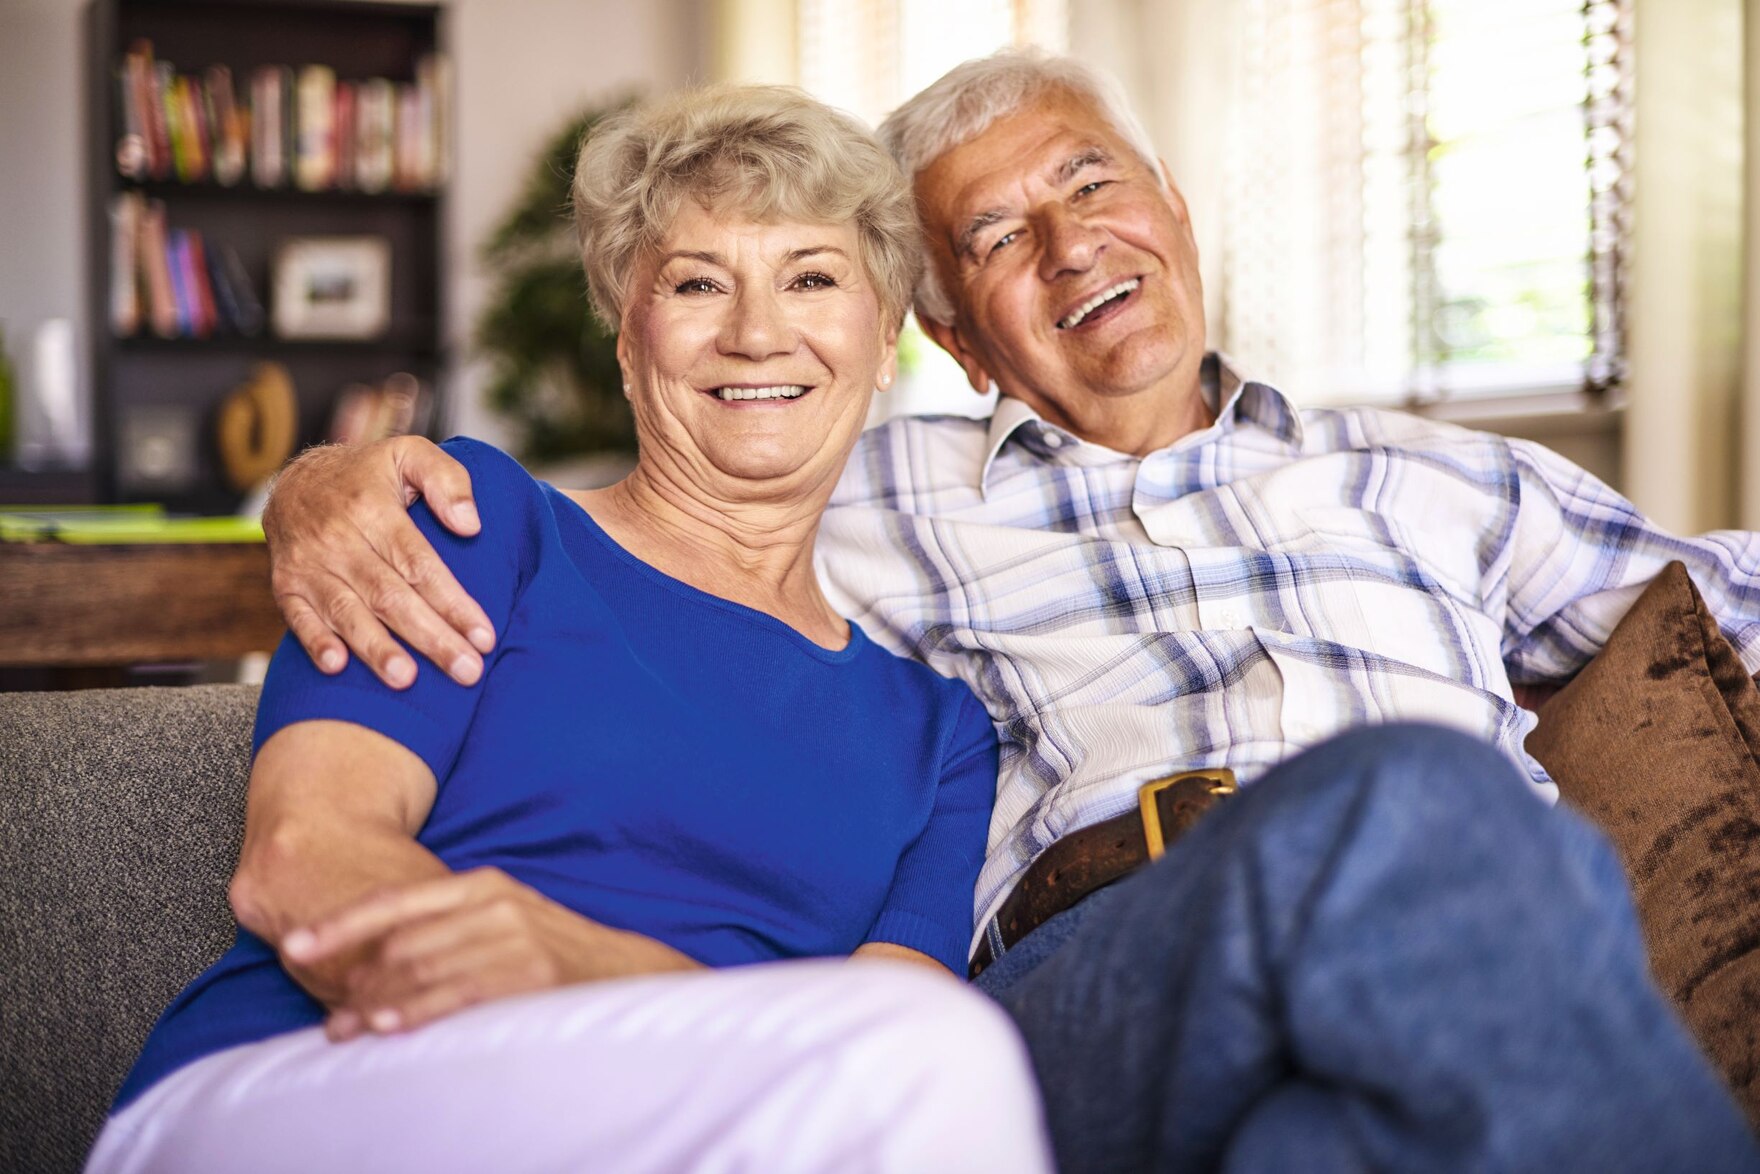 Eine ältere Frau und ein älterer Mann sitzen nebeneinander und lachen. Der Mann hat einen Arm um die Frau gelegt.